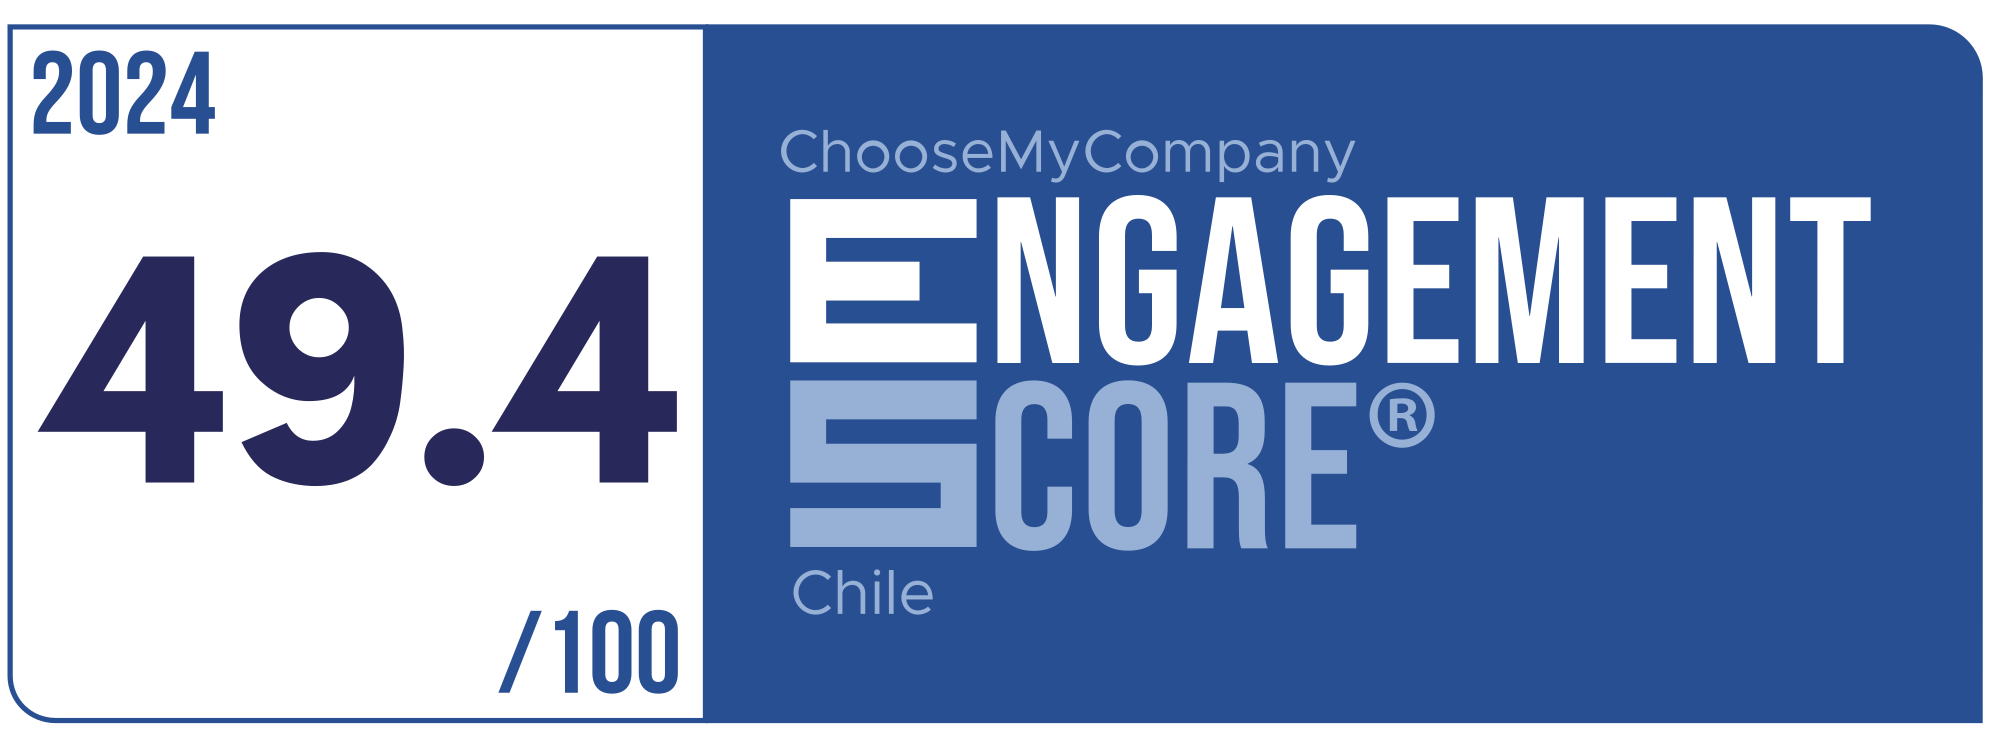 Label Engagement Score 2024 Chile